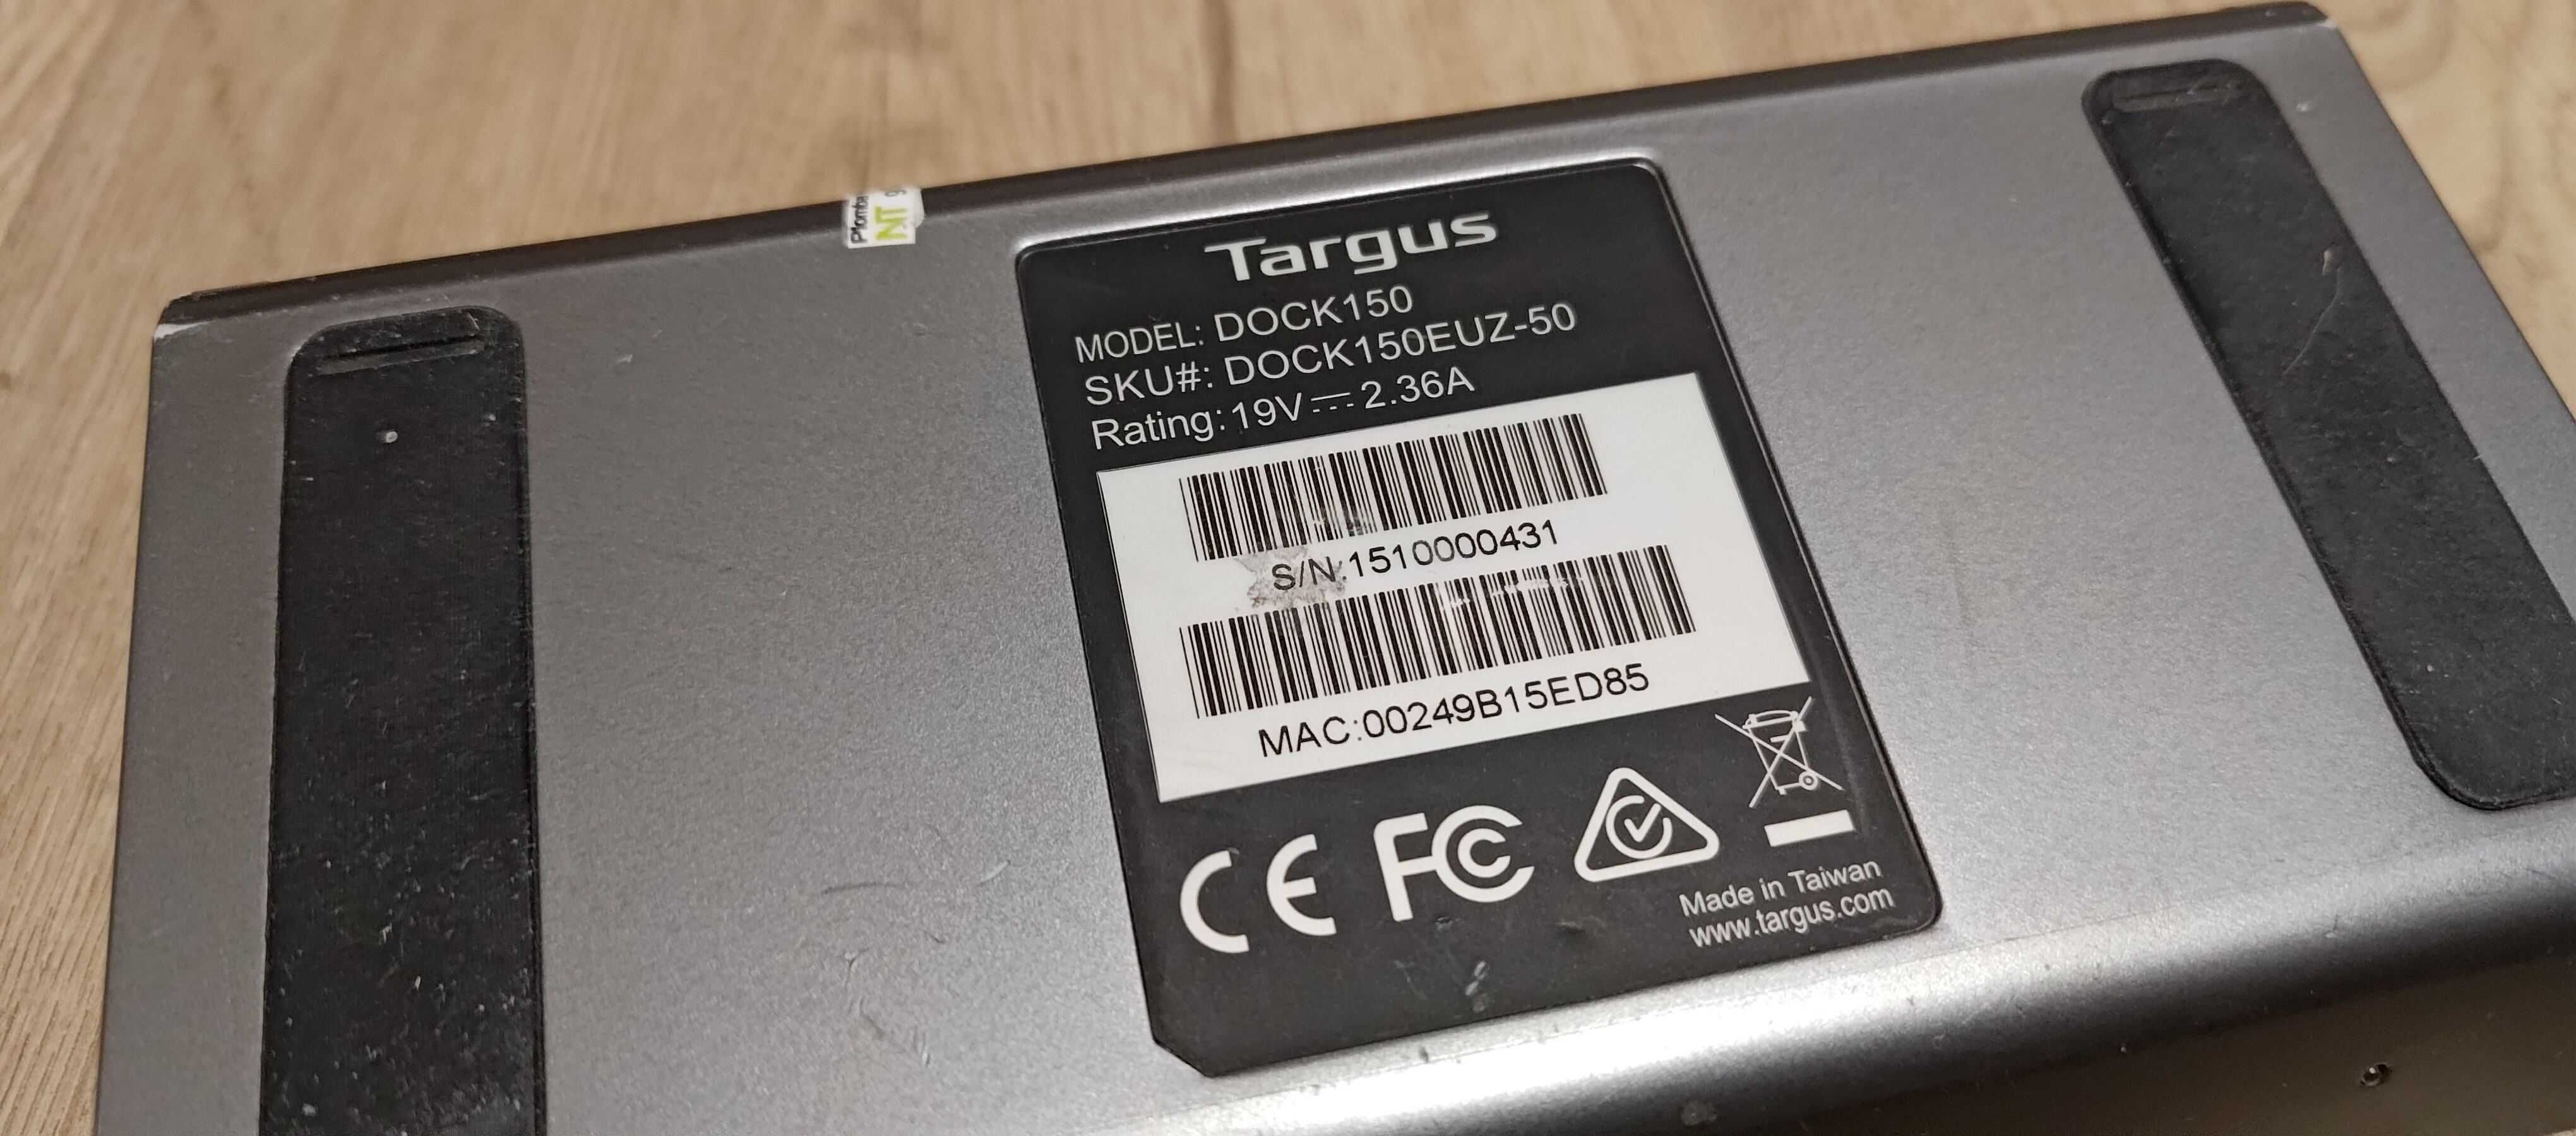 Stacja dokująca Targus DOCK150 USB 3.0 DV2K